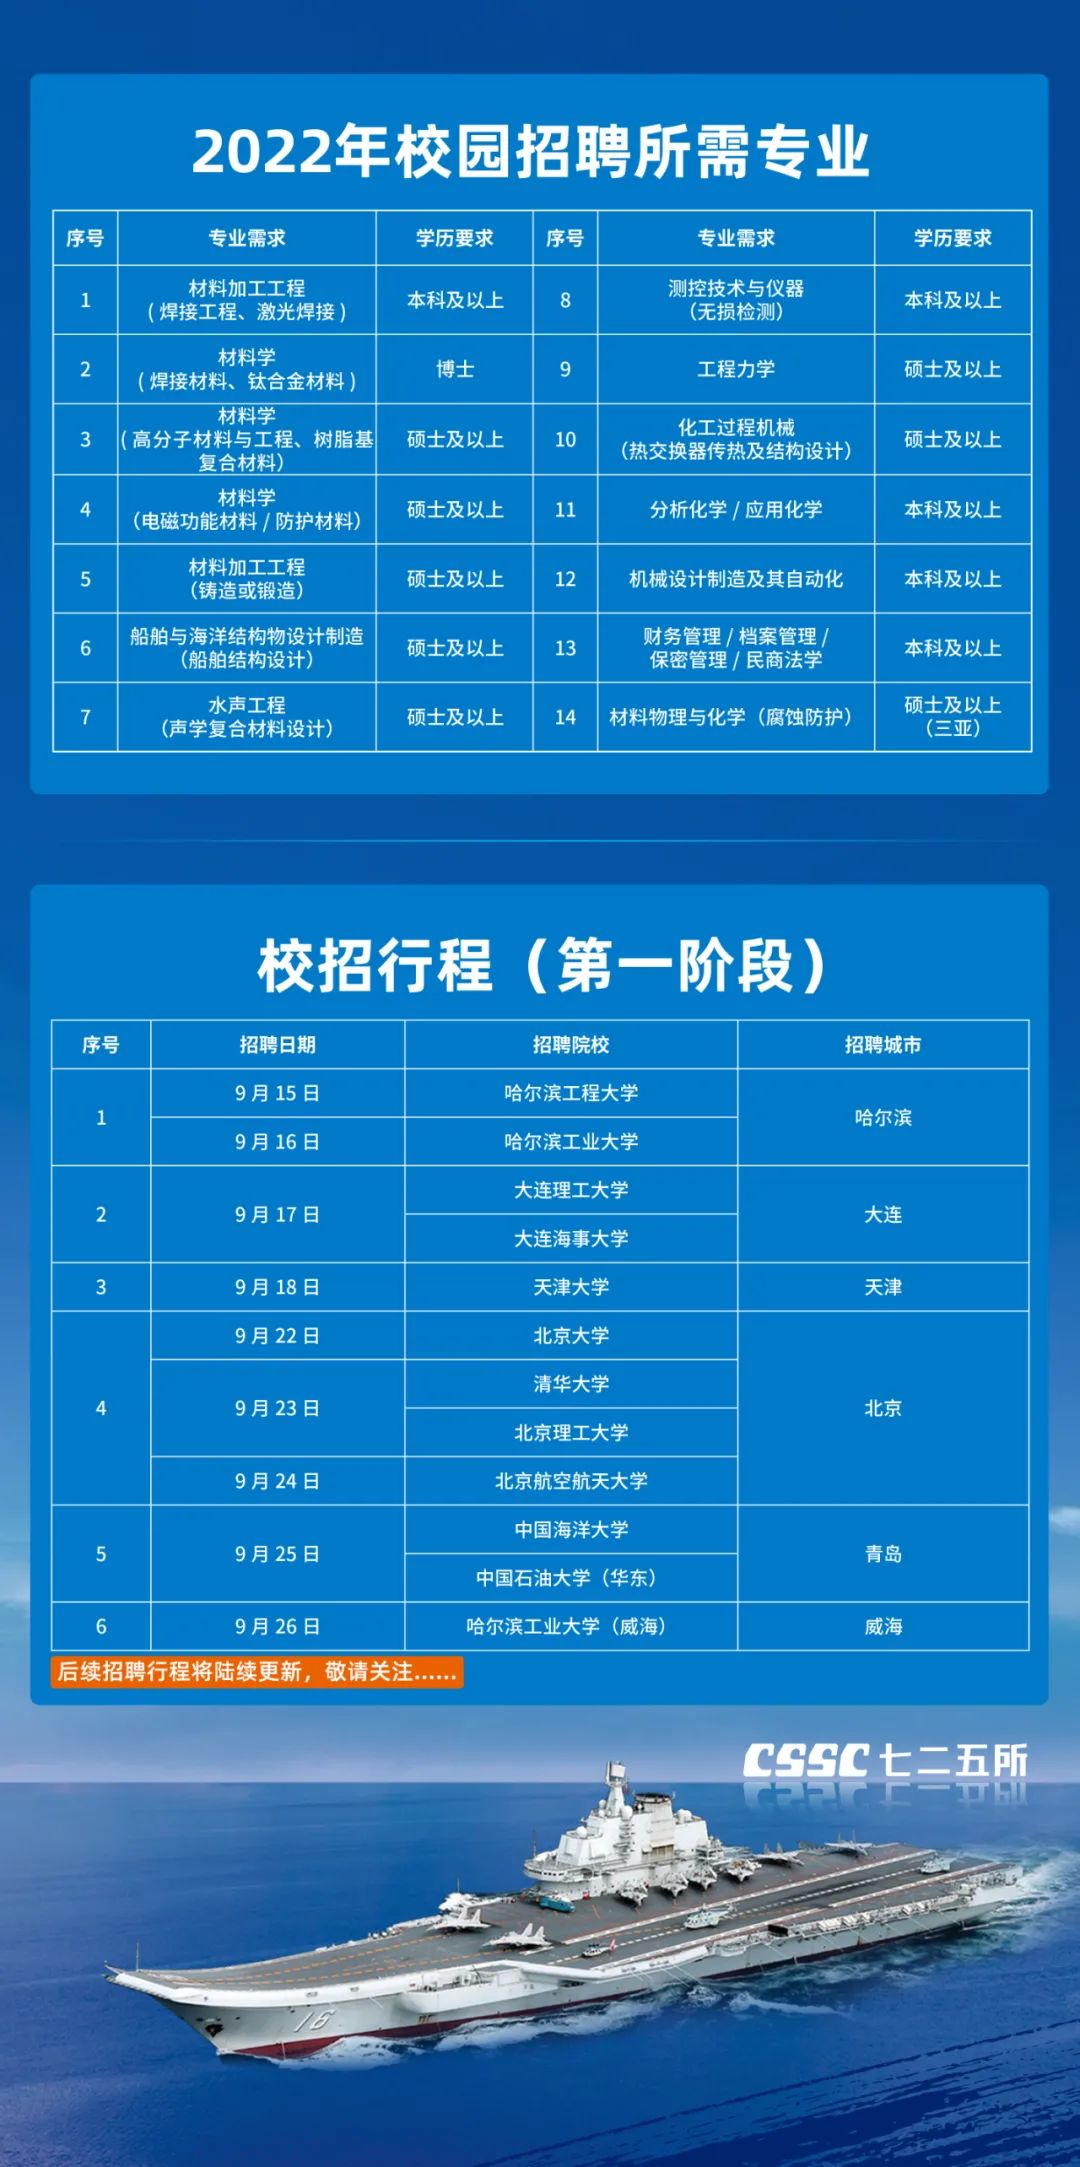 芒果体育华夏船舶团体局限公司(图1)